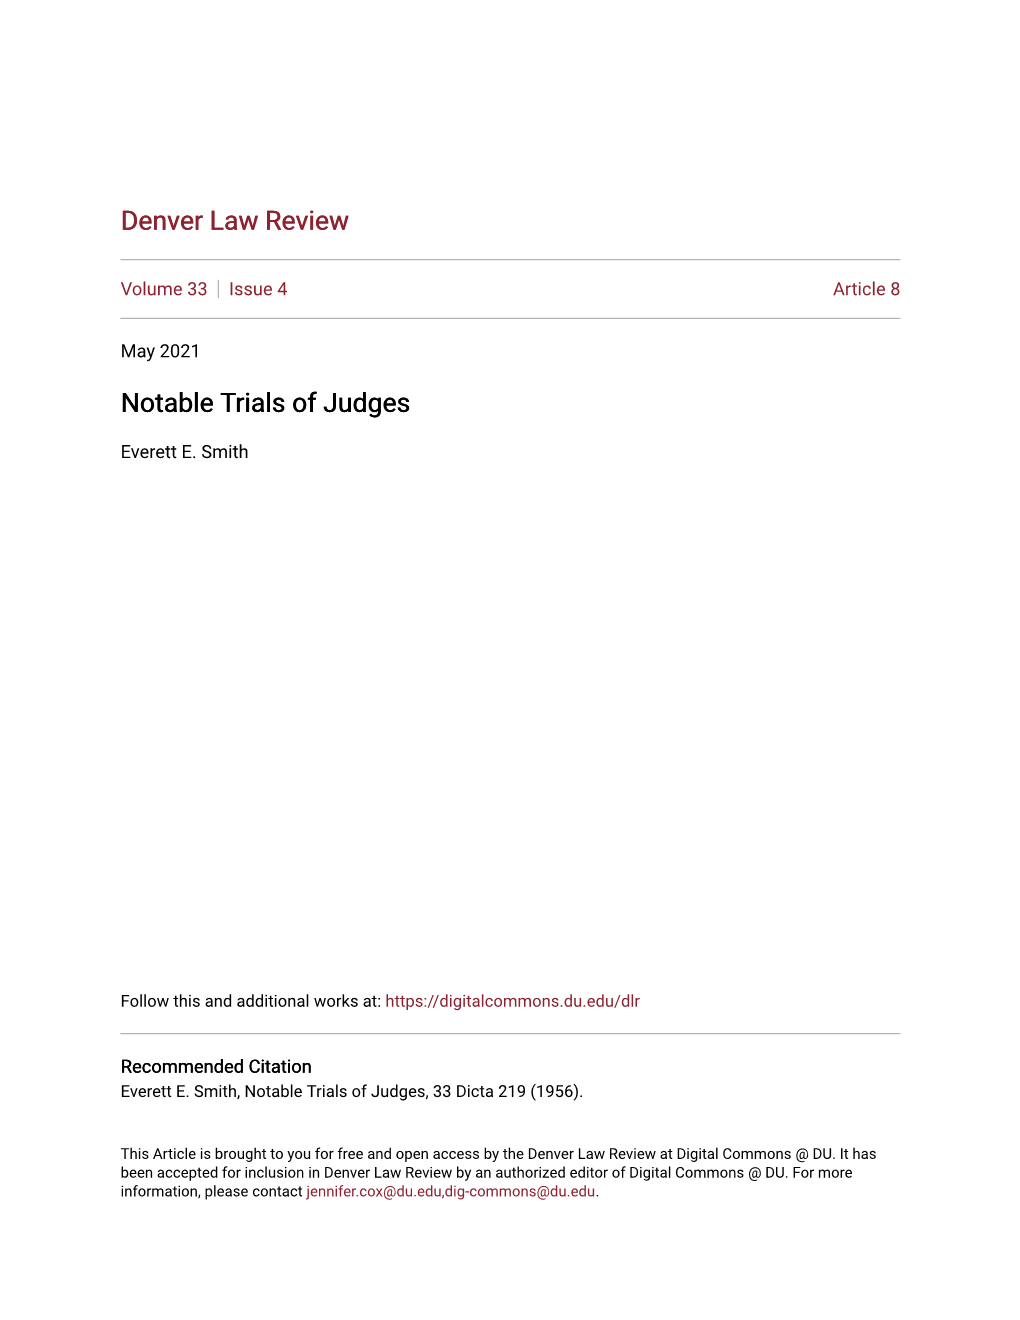 Notable Trials of Judges